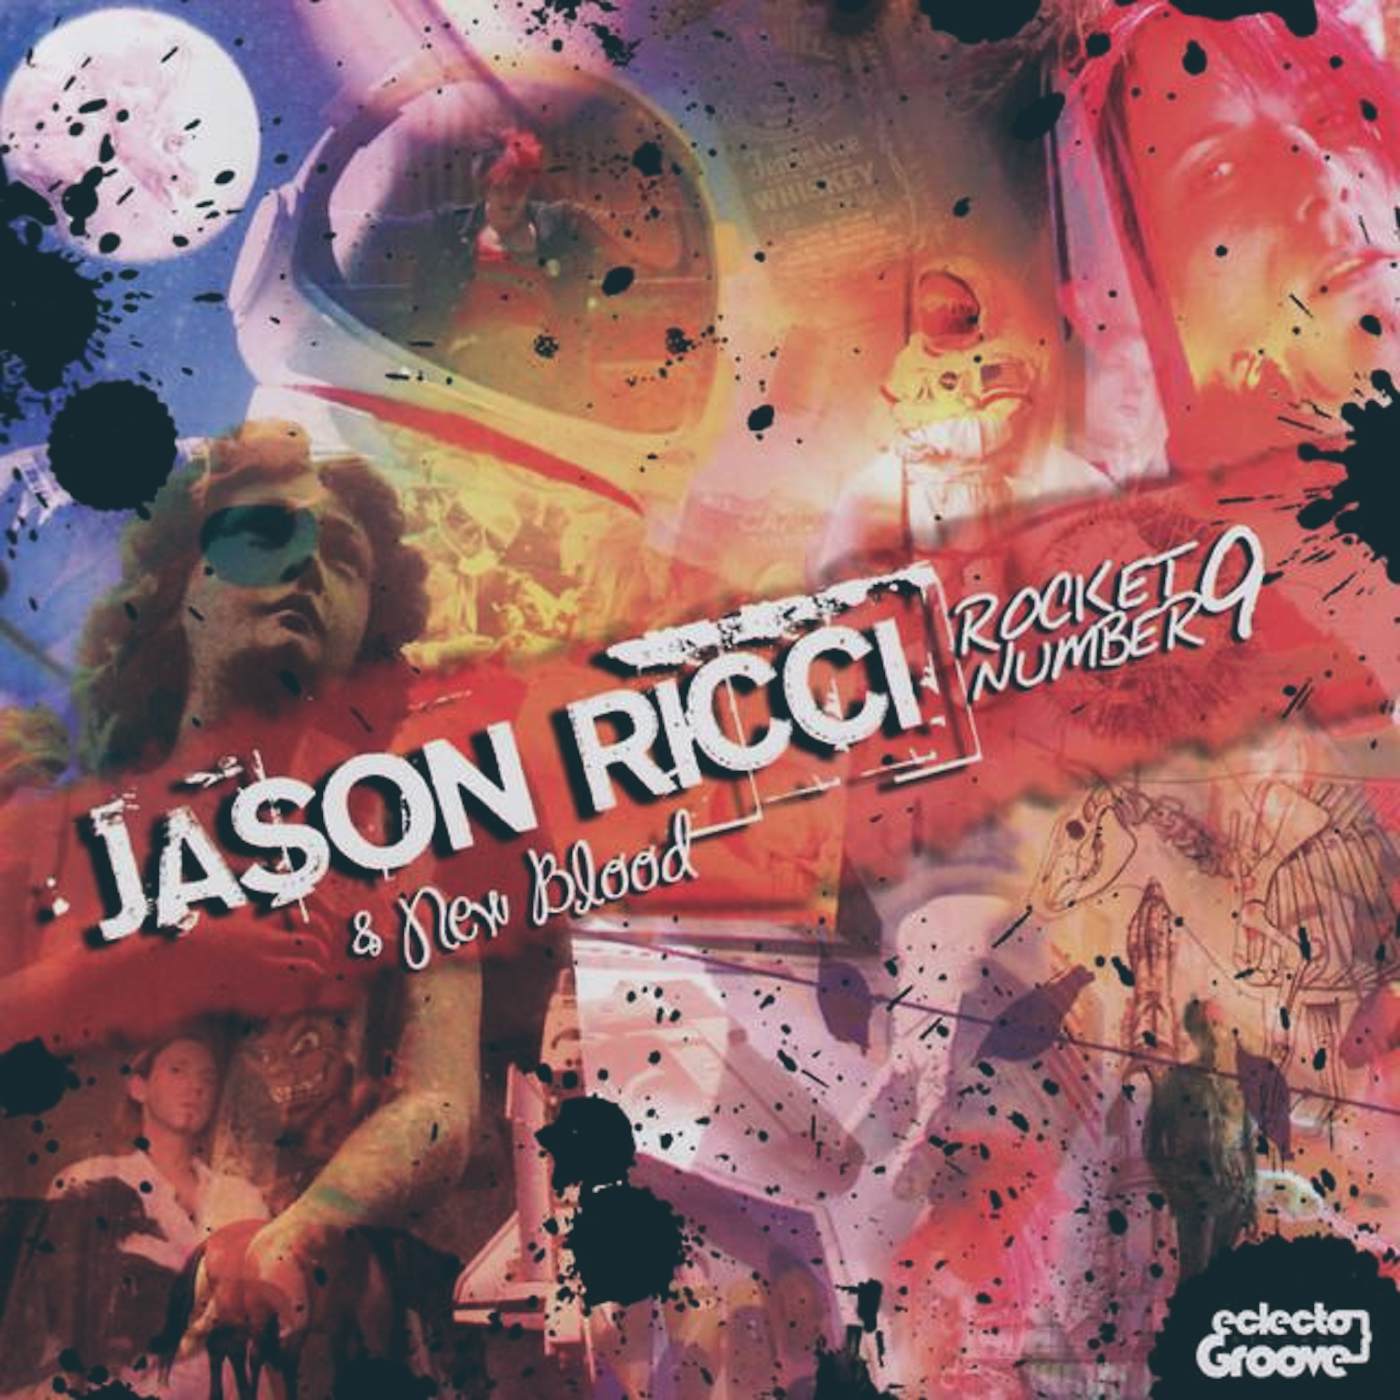 Jason Ricci And New Blood